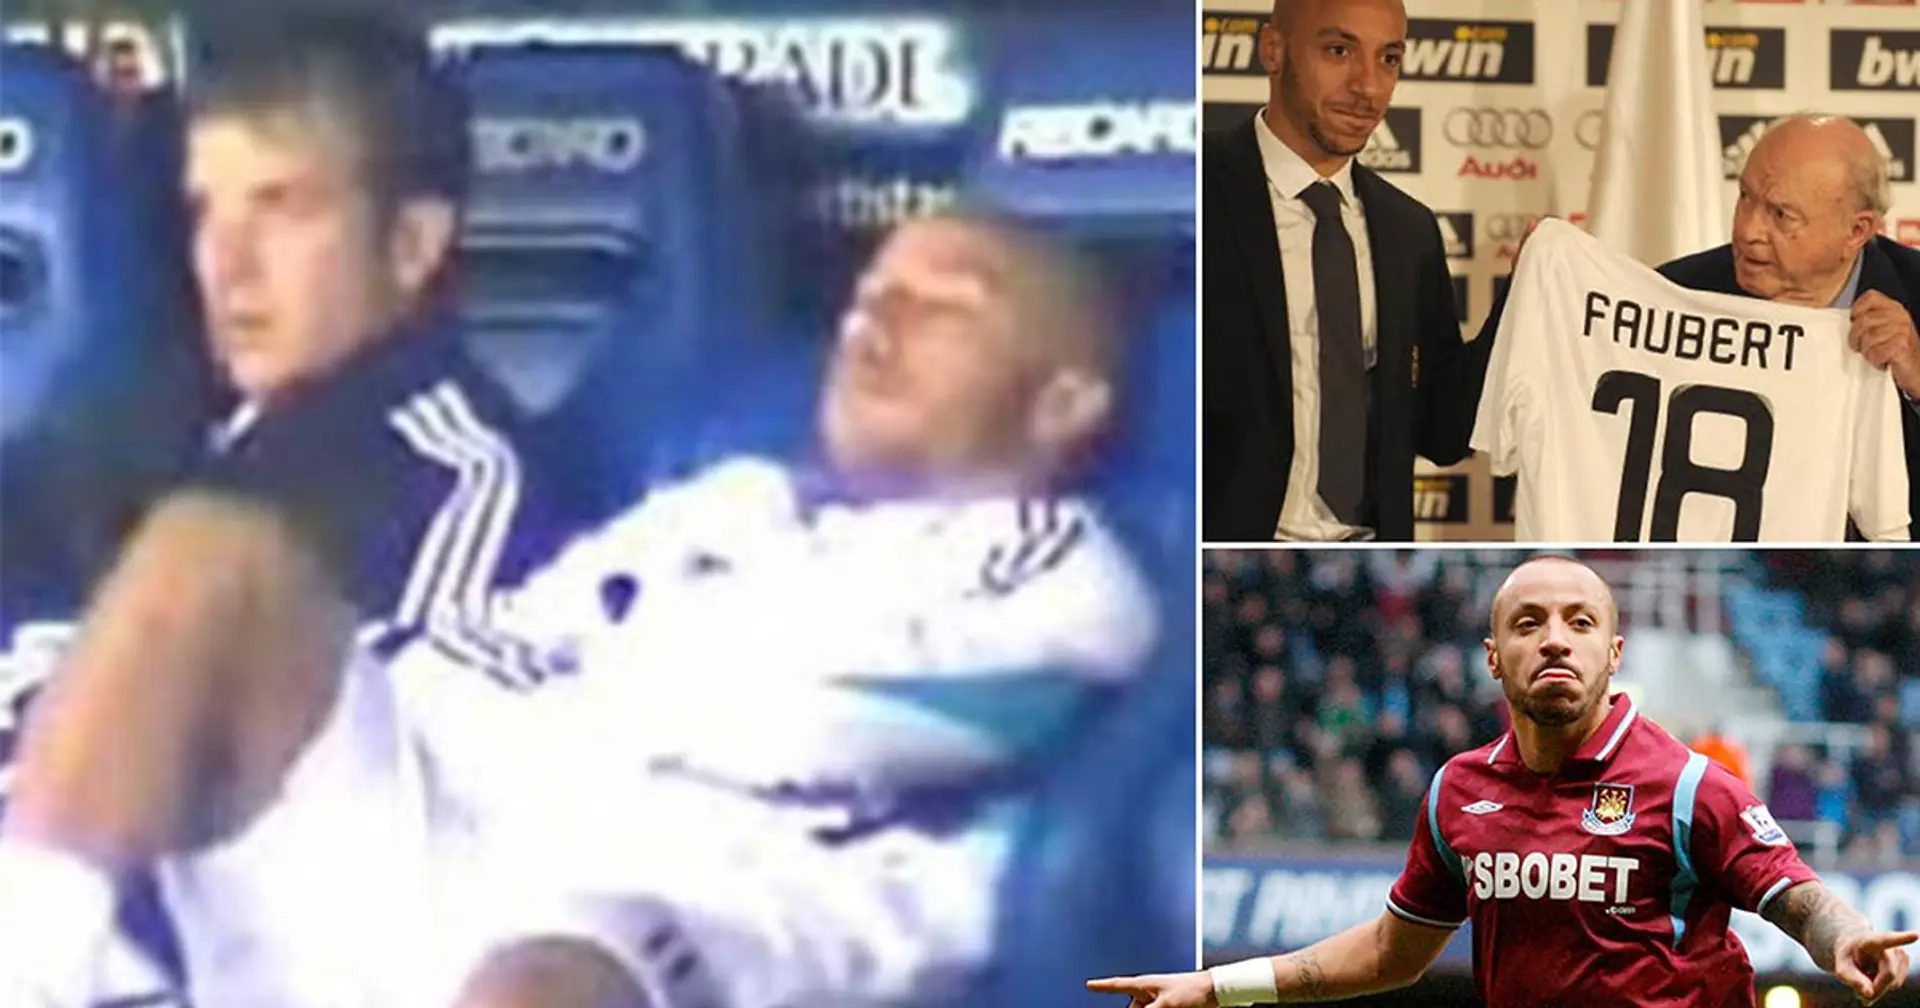 Julien Faubert hat wirklich für Real Madrid gespielt: Rangliste von Real Madrids schlechtesten Transfers im Januar